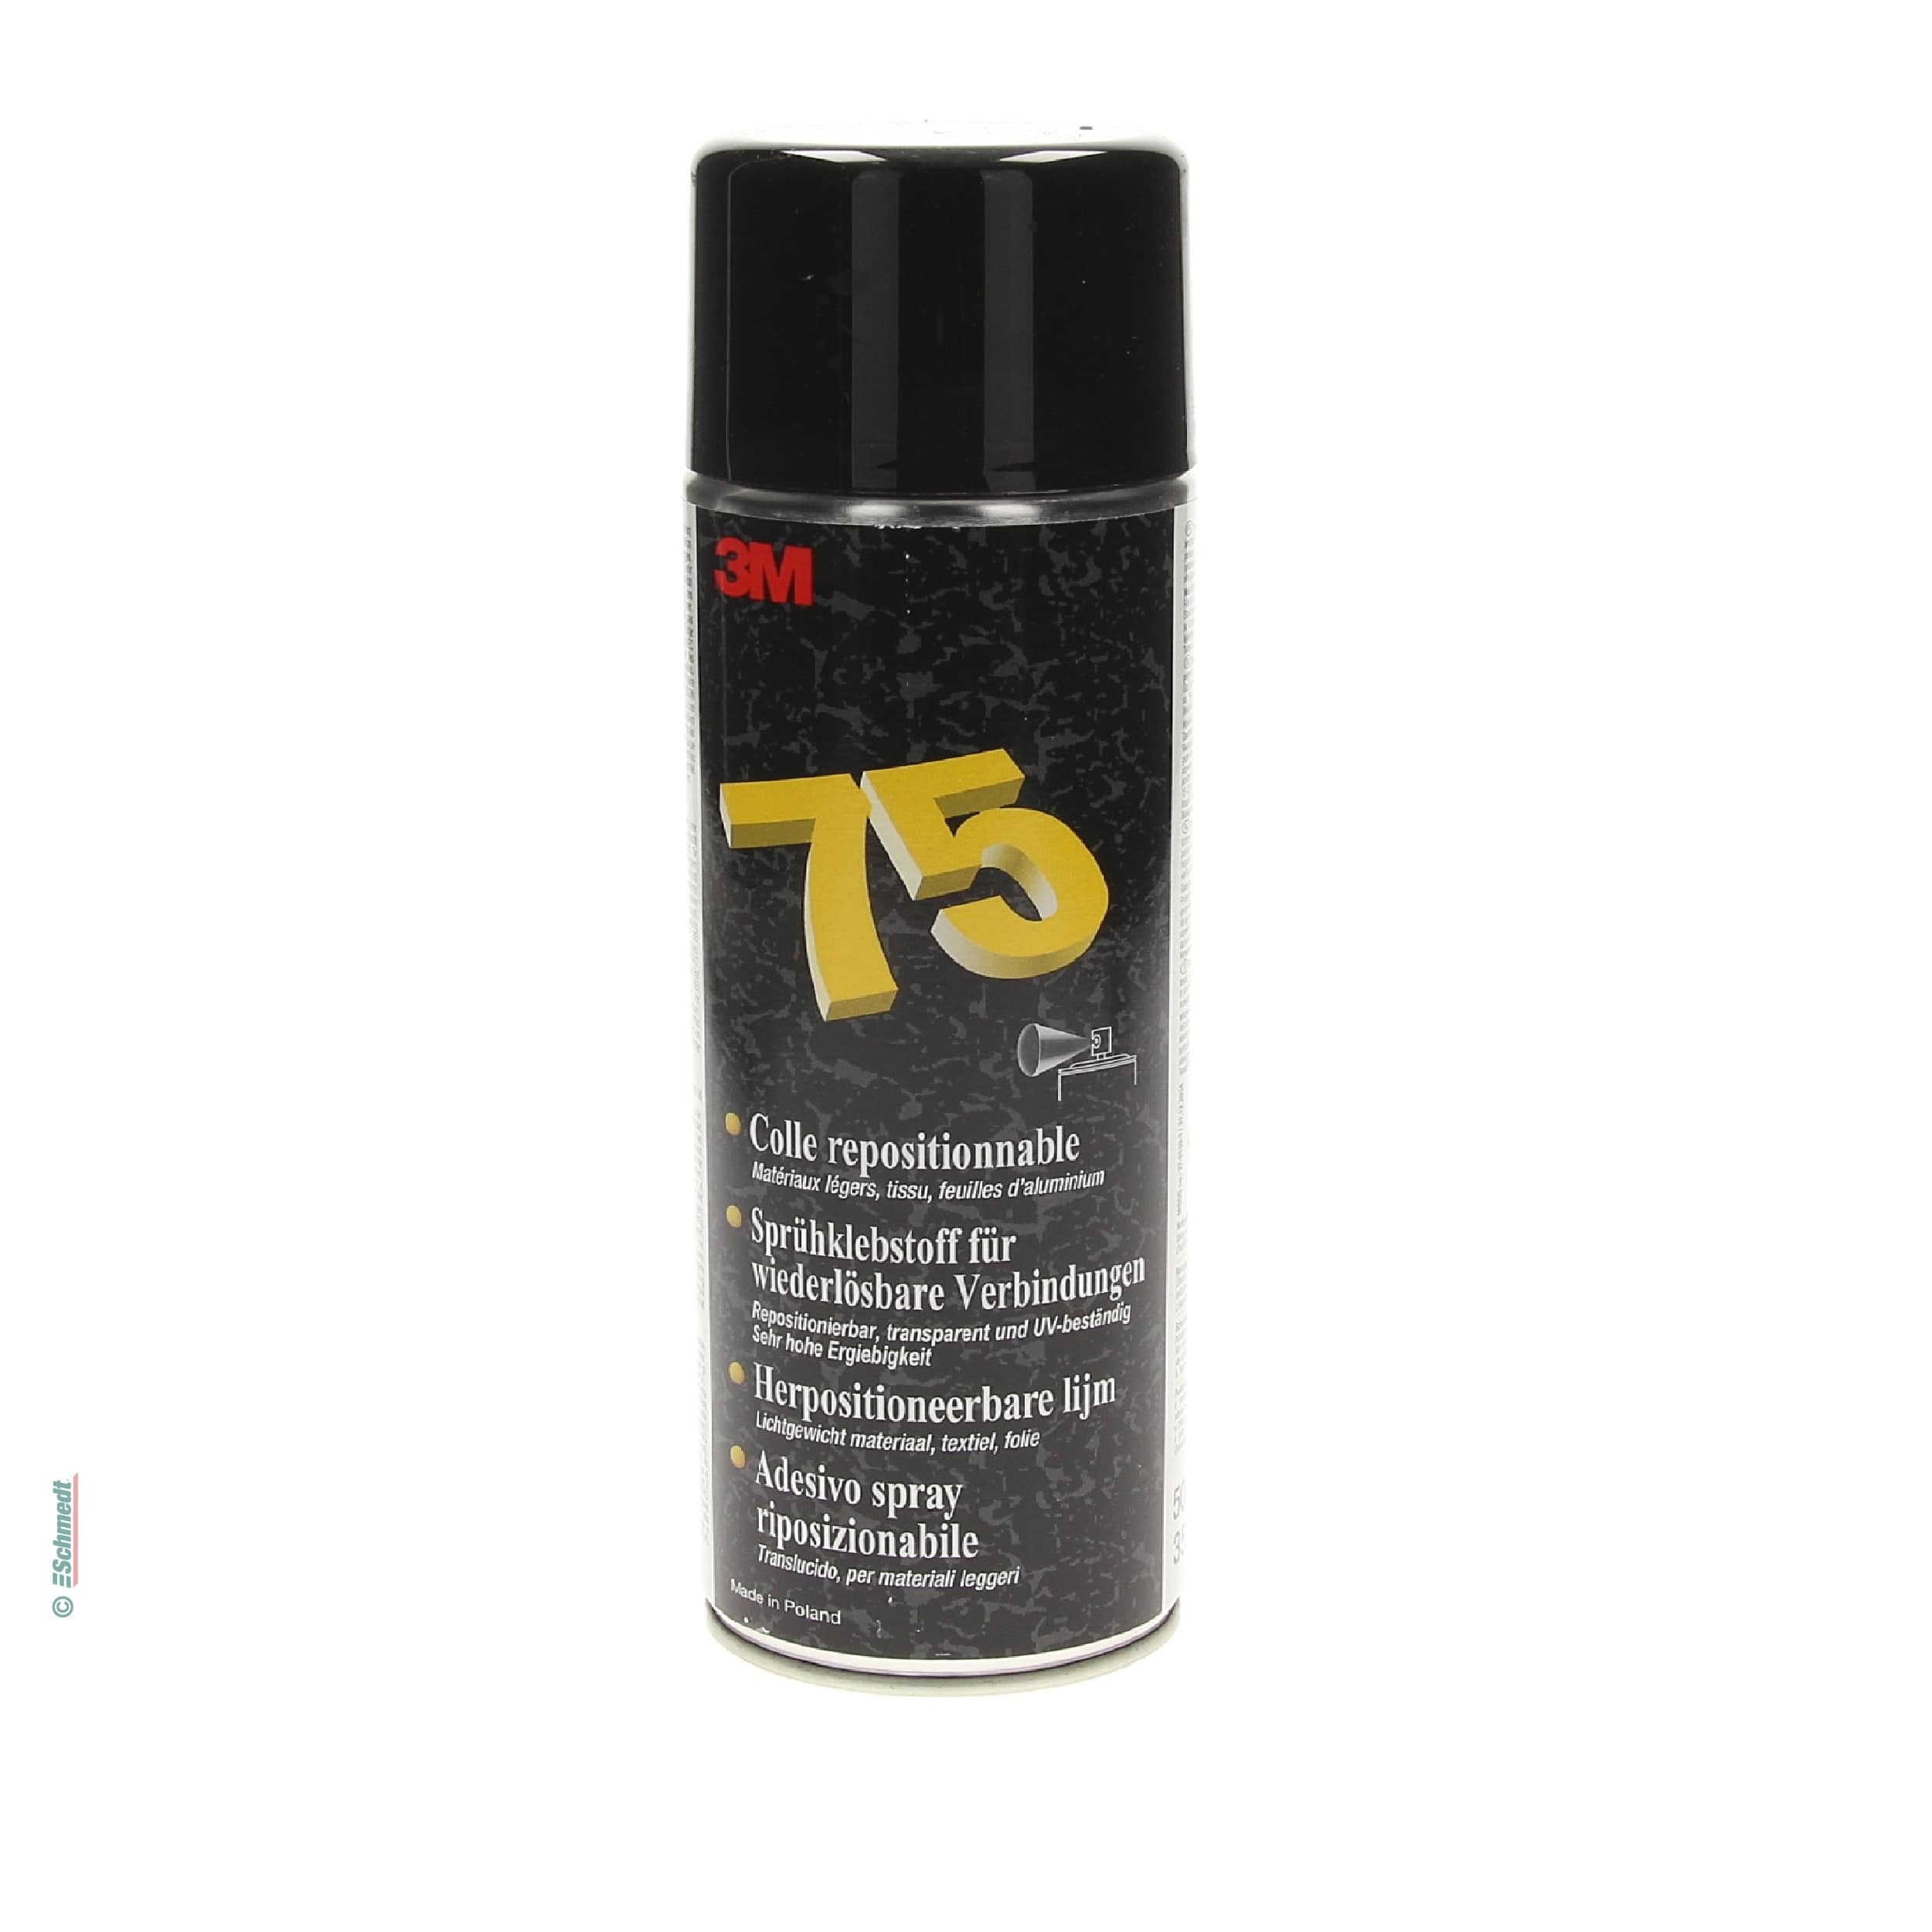 Adhesivo aerosol Tipo Scotch-Weld 75 - se puede despegar y volver a posicionar - para pegar materiales ligeros como papel, cartón, tel, film...